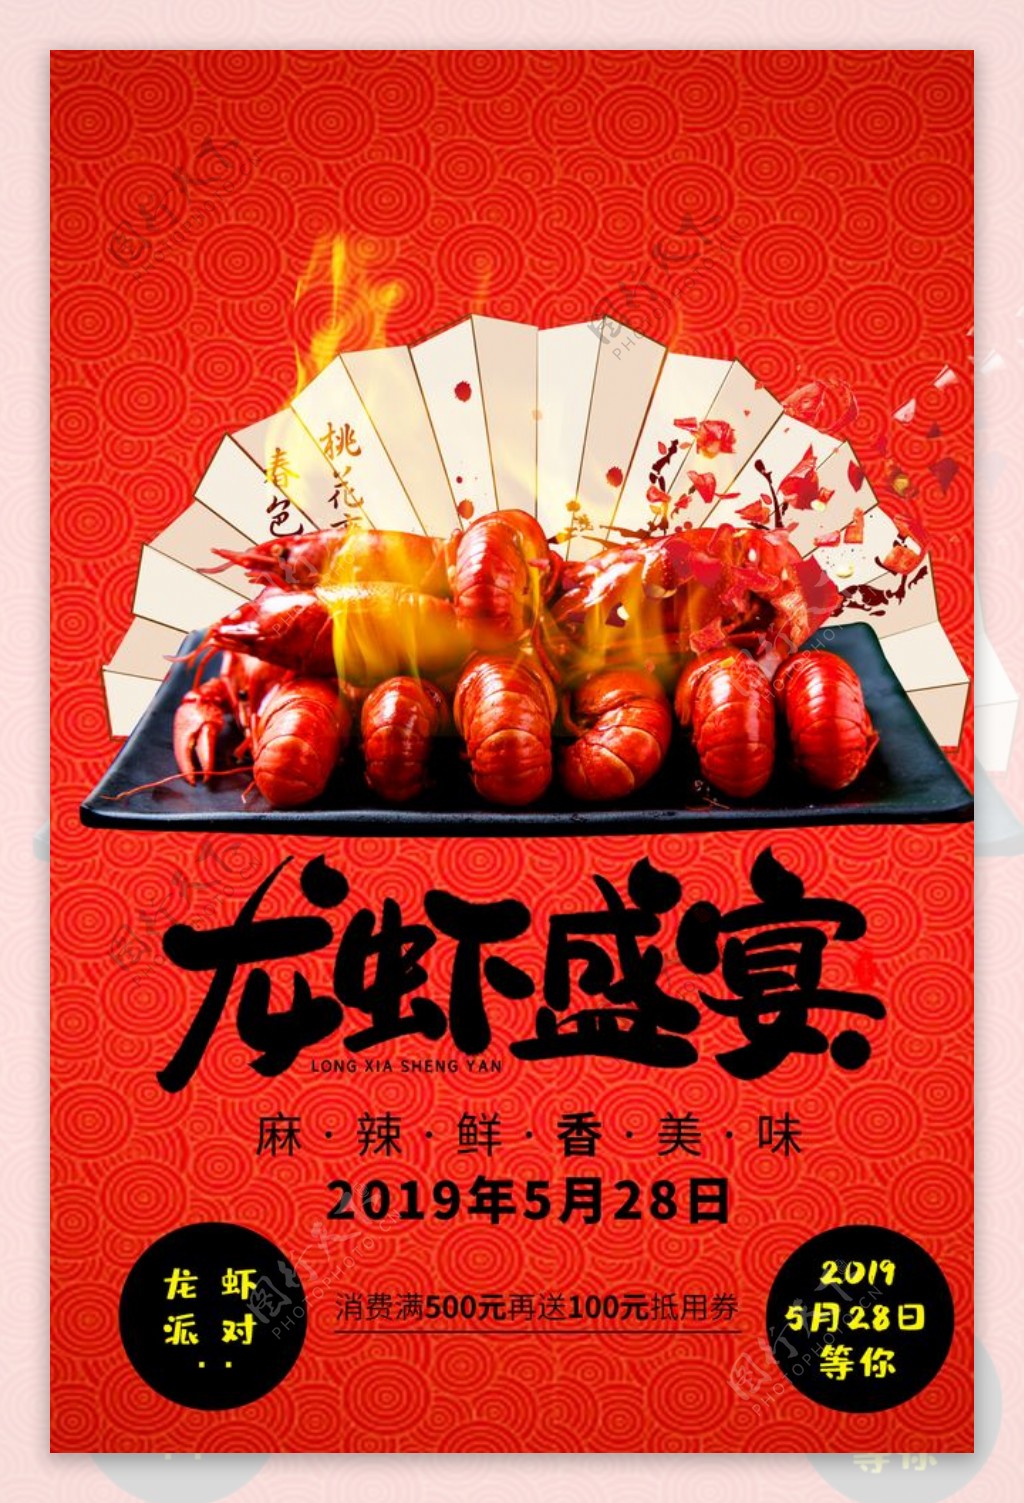 龙虾美食食材活动宣传海报